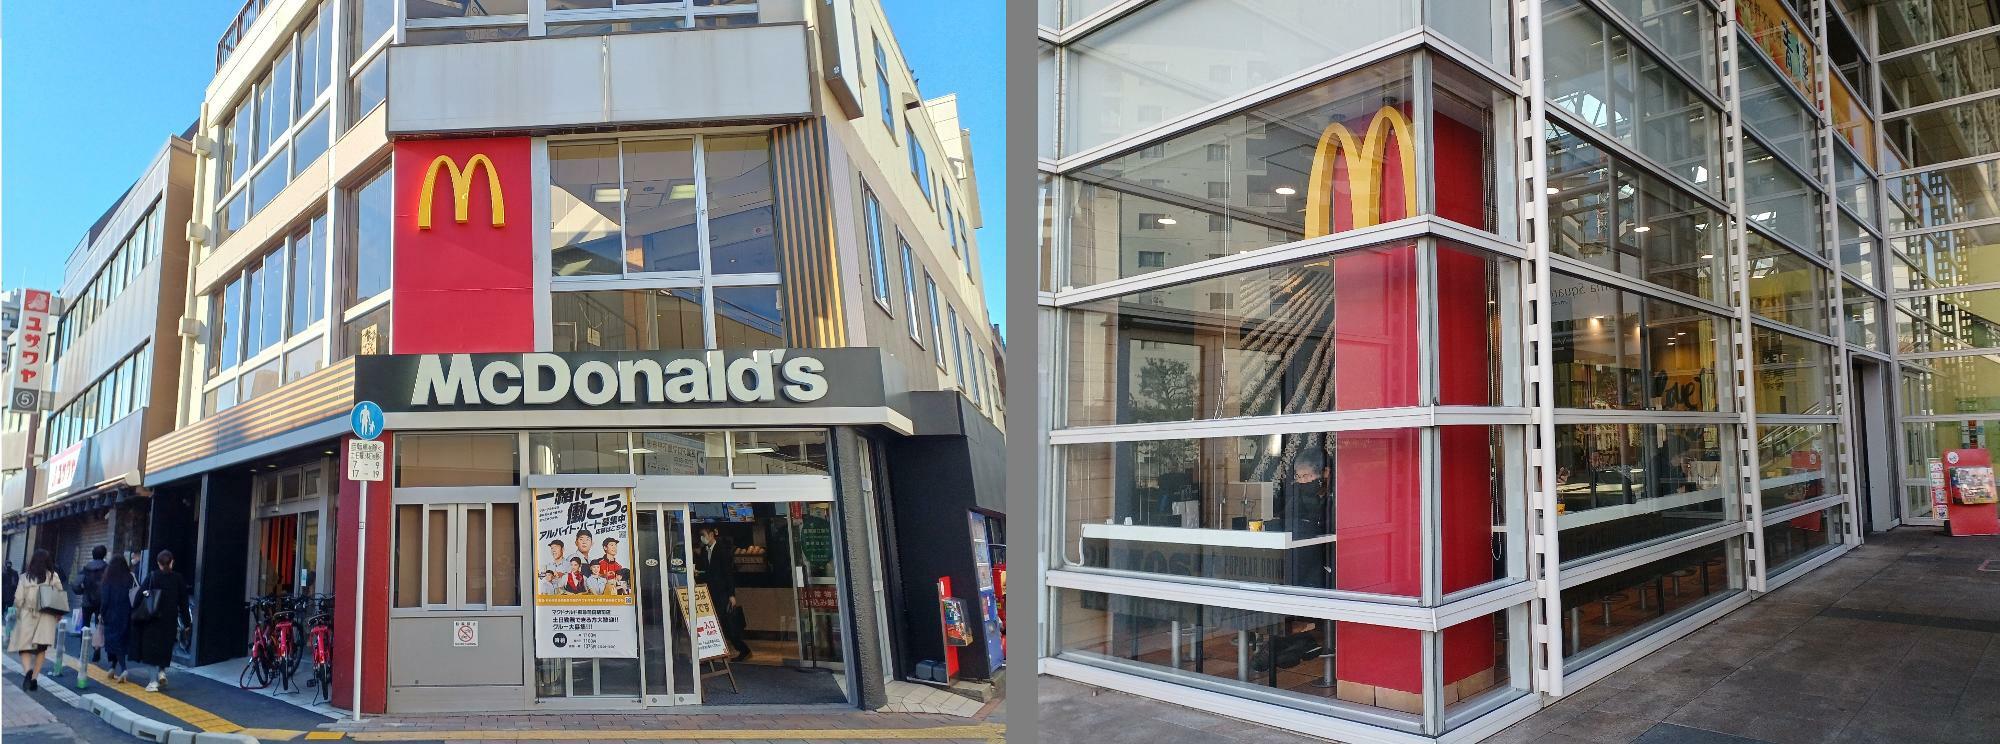 （左）マクドナルド東急蒲田駅前店、（右）マクドナルドアロマスクエア店